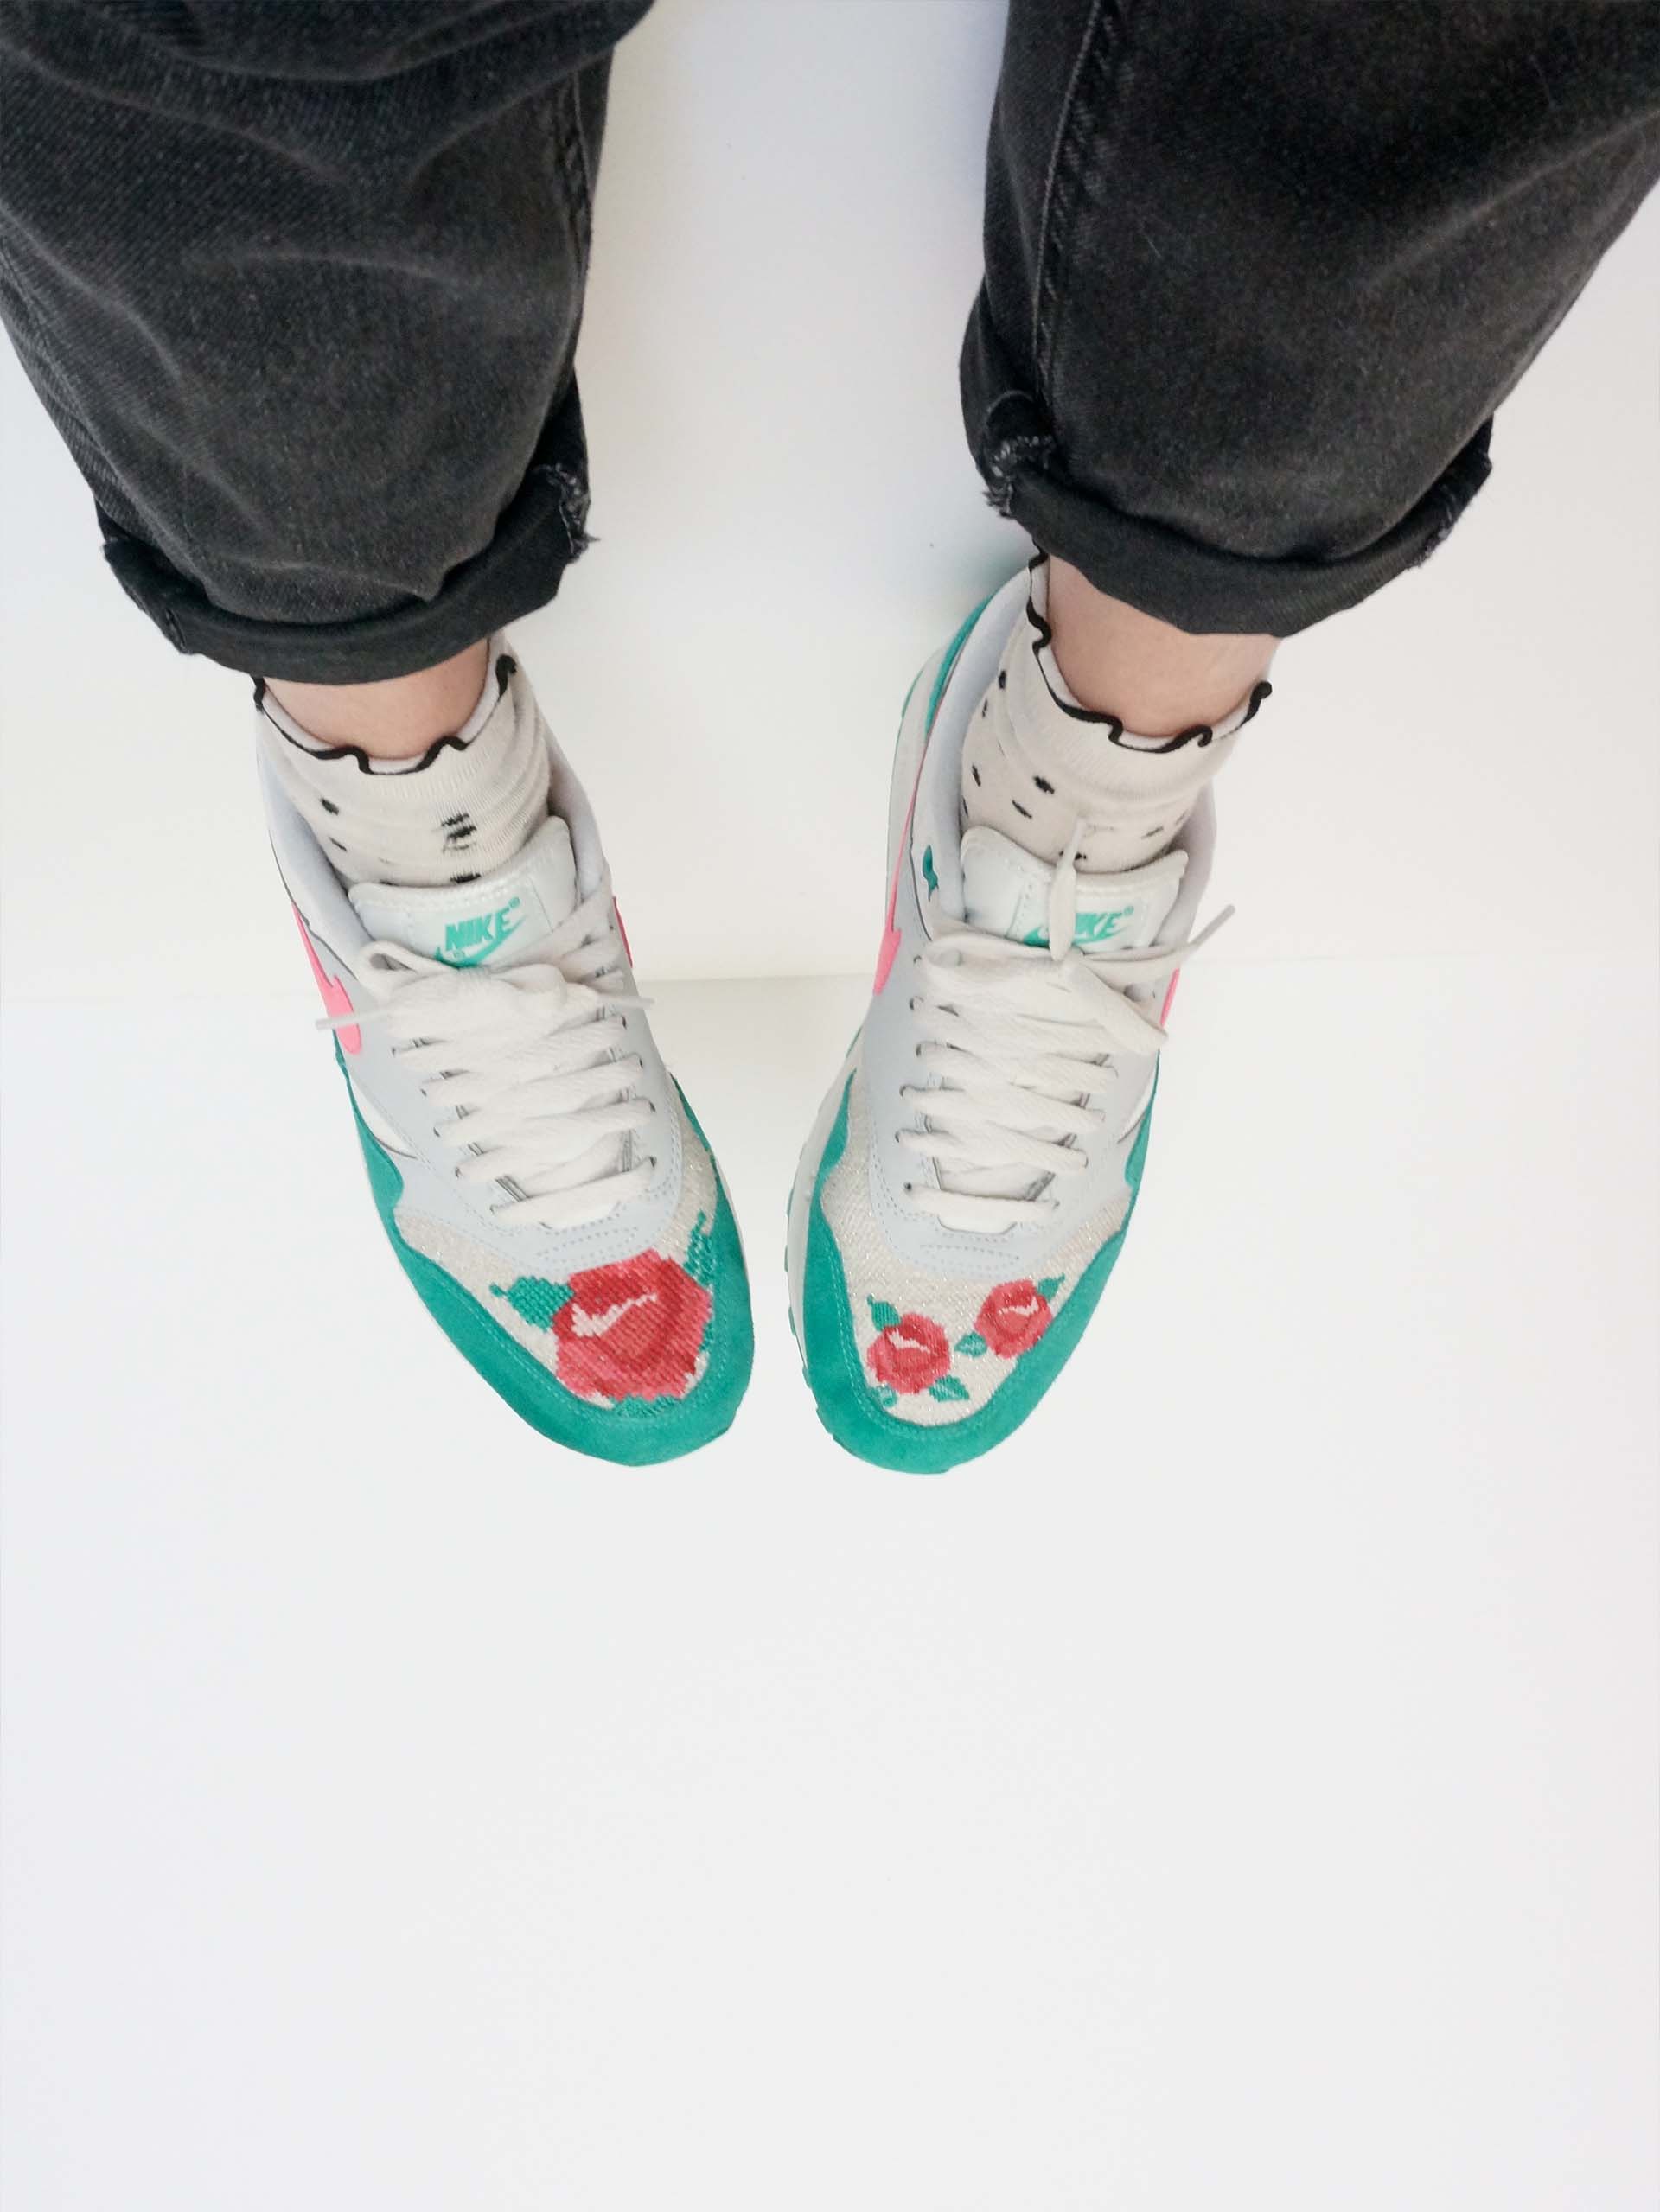 Broderie fleurs aux points de croix sur sneakers Nike Air Max 1 vertes et roses